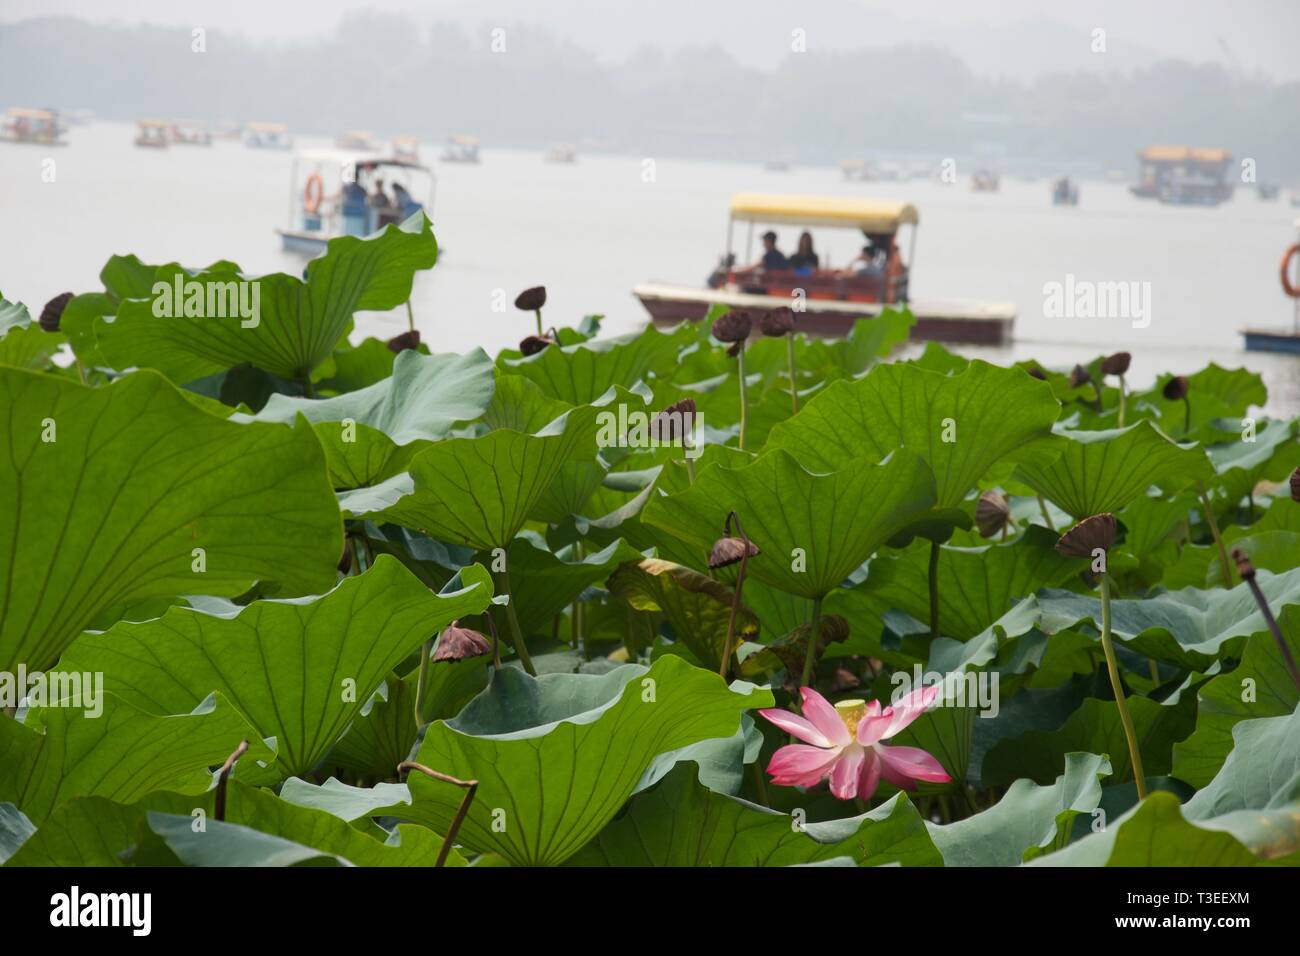 Fleur de lotus rose et feuilles de lotus en premier plan sur le lac chinois. Bateaux touristiques peddle (pédalos) sur le lac Misty en arrière-plan. Summer Palace, Beijing - Banque D'Images